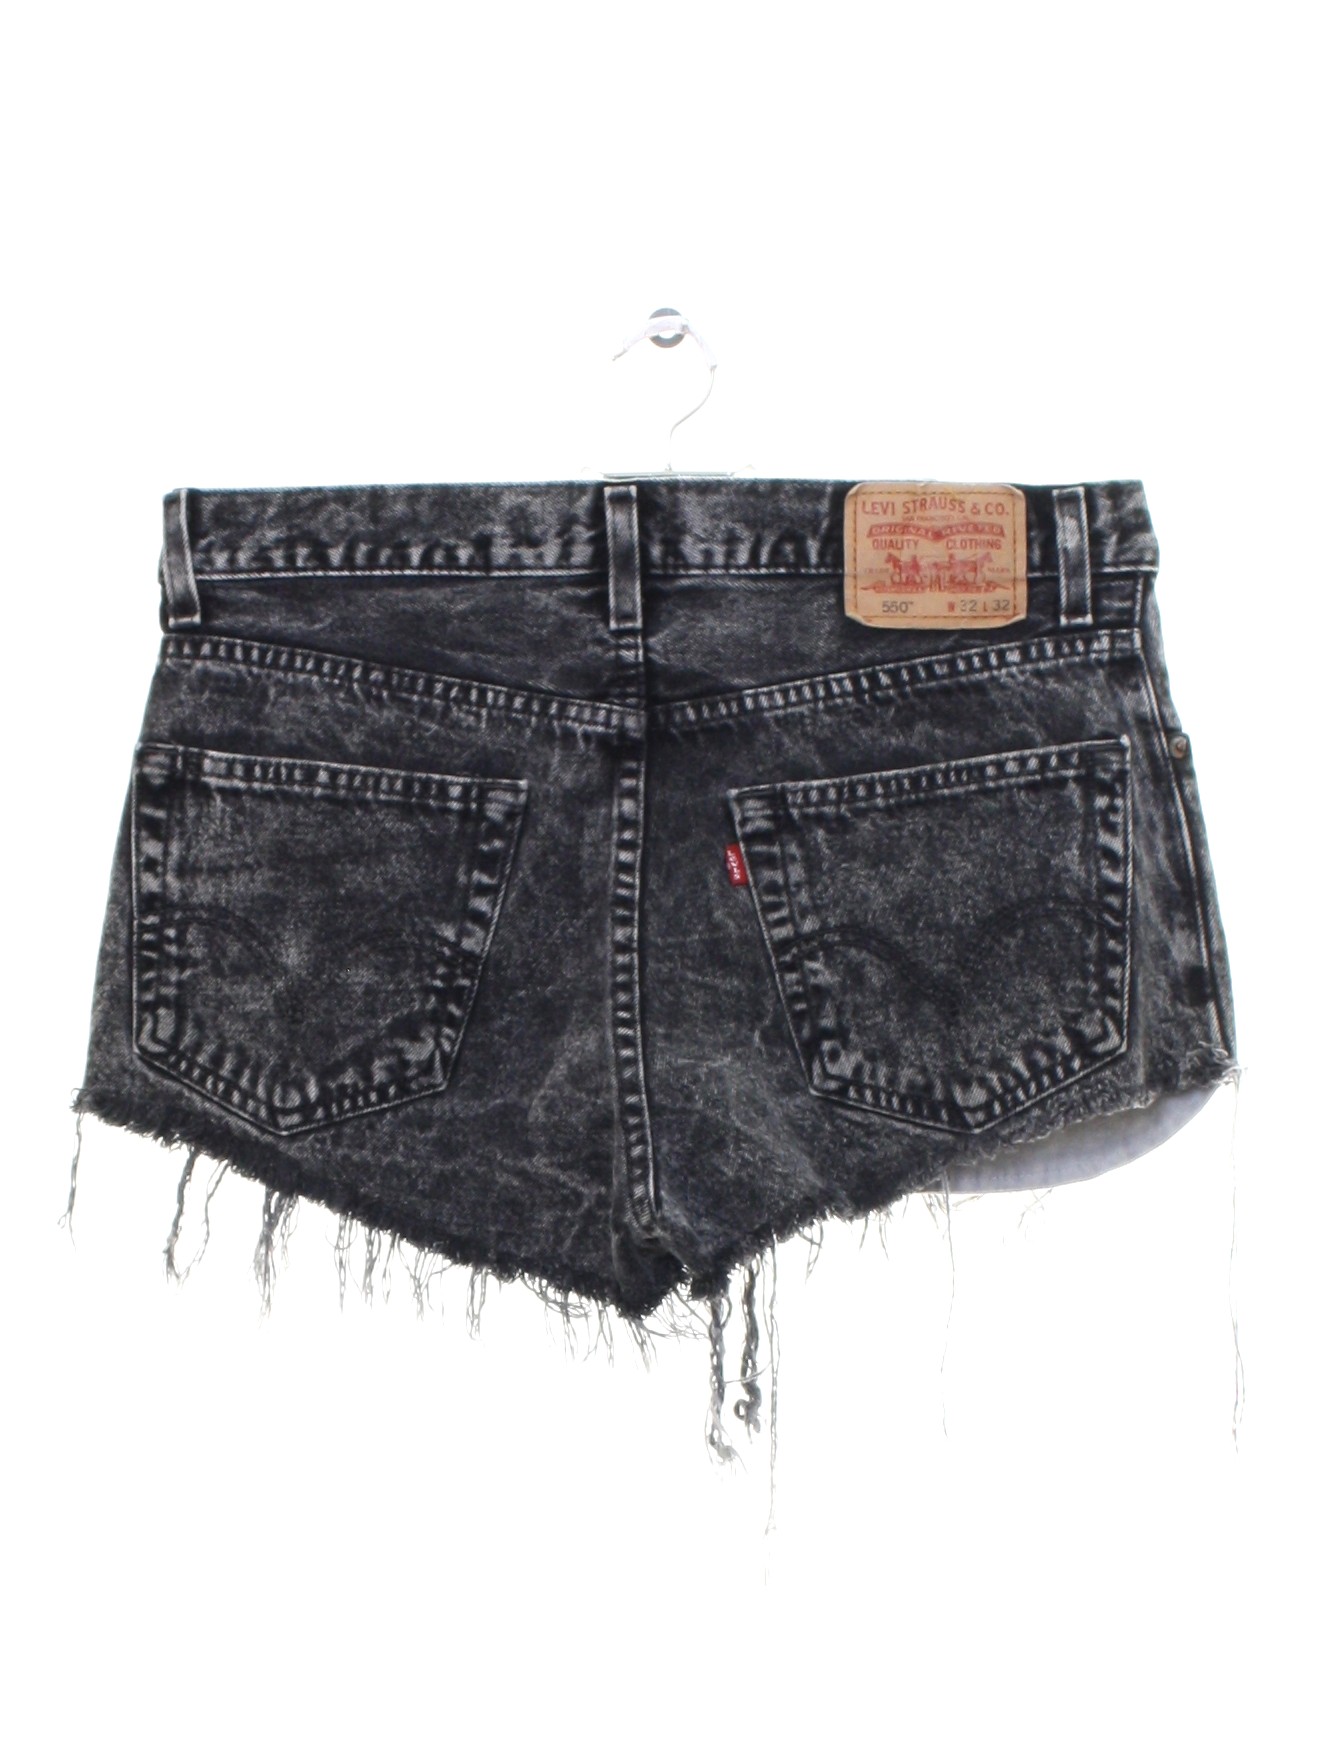 levis 550 womens vintage shorts